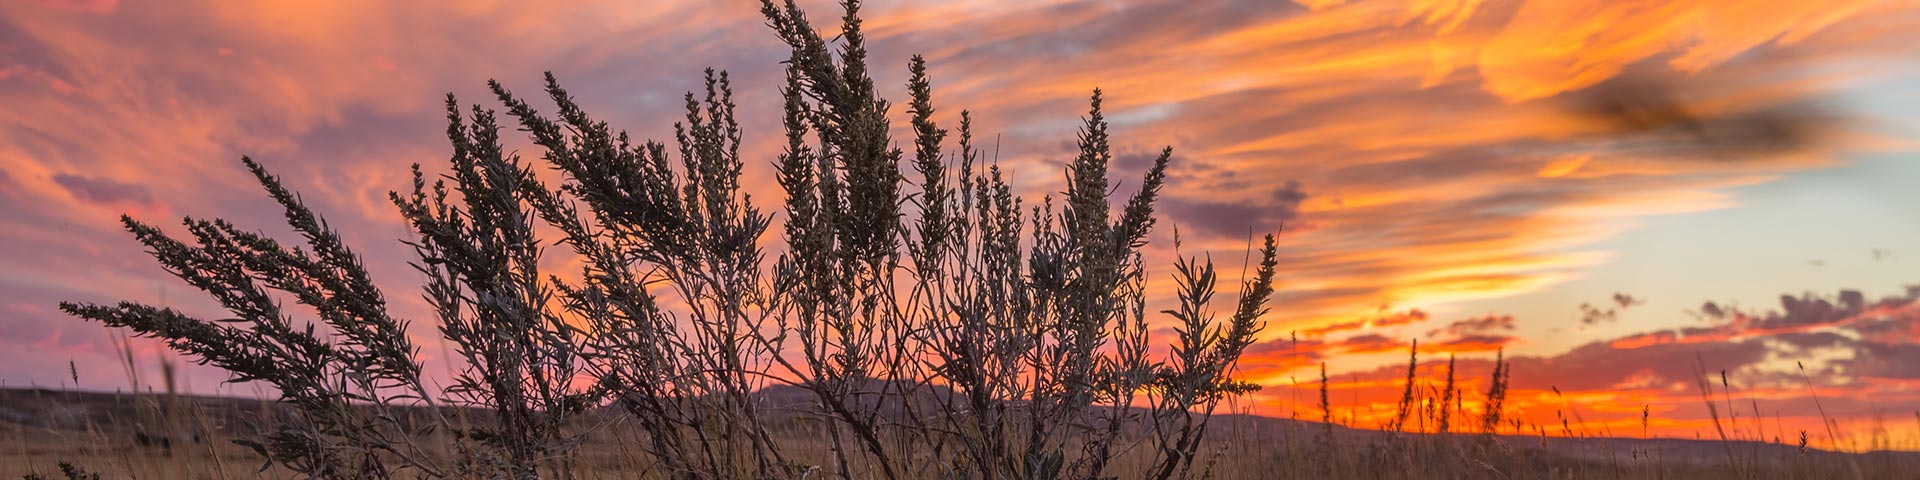 Scenic sunset landscape in September at Grasslands National Park.